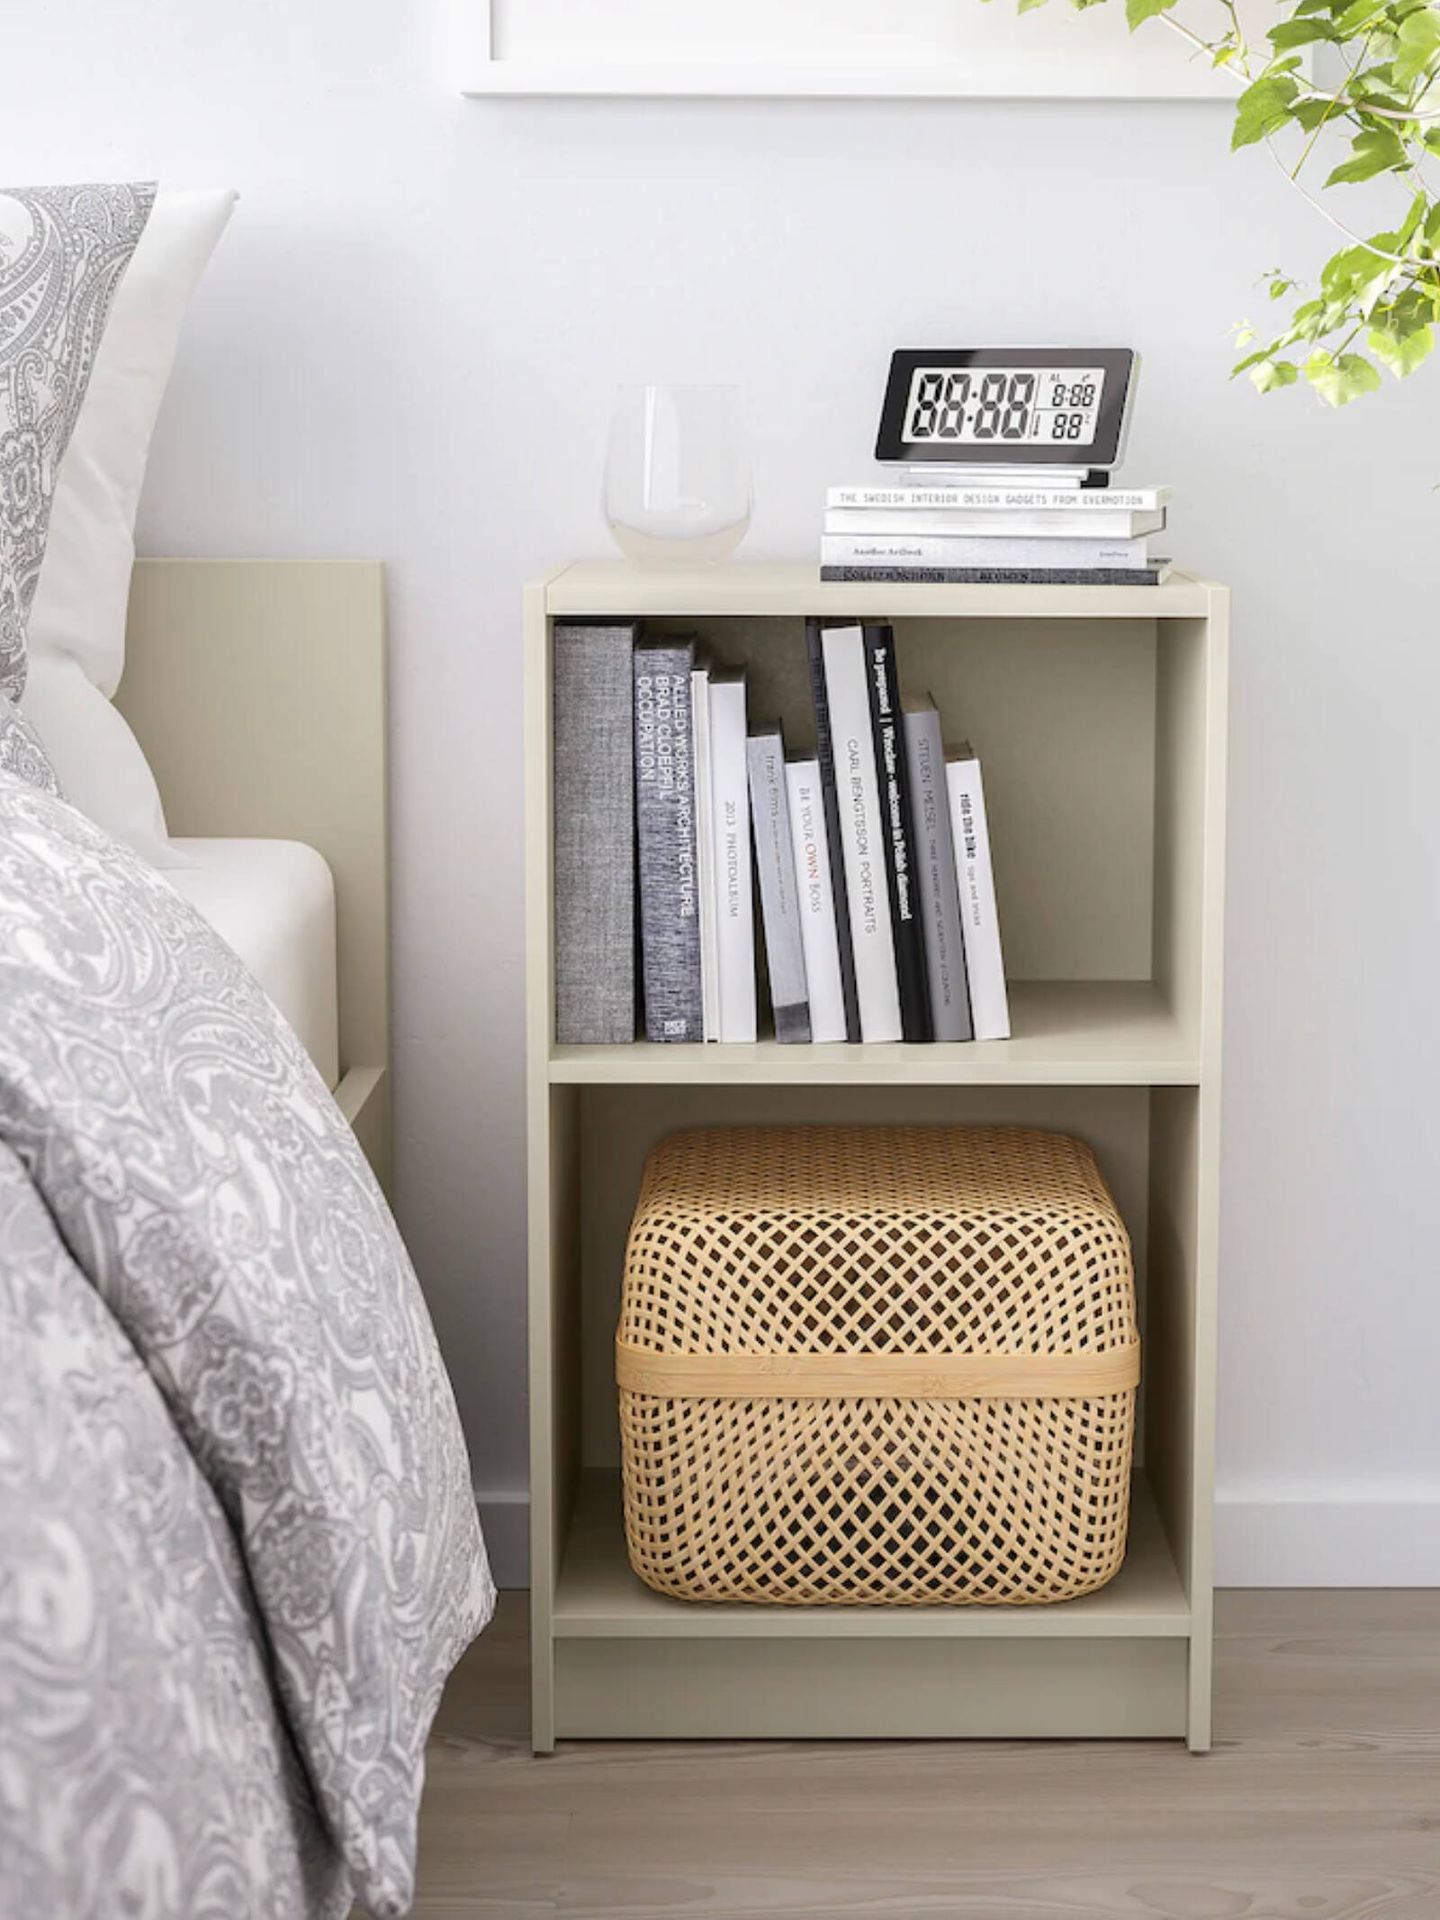 Soluciones deco para dormitorios pequeños y a buen precio. (Cortesía/Ikea)